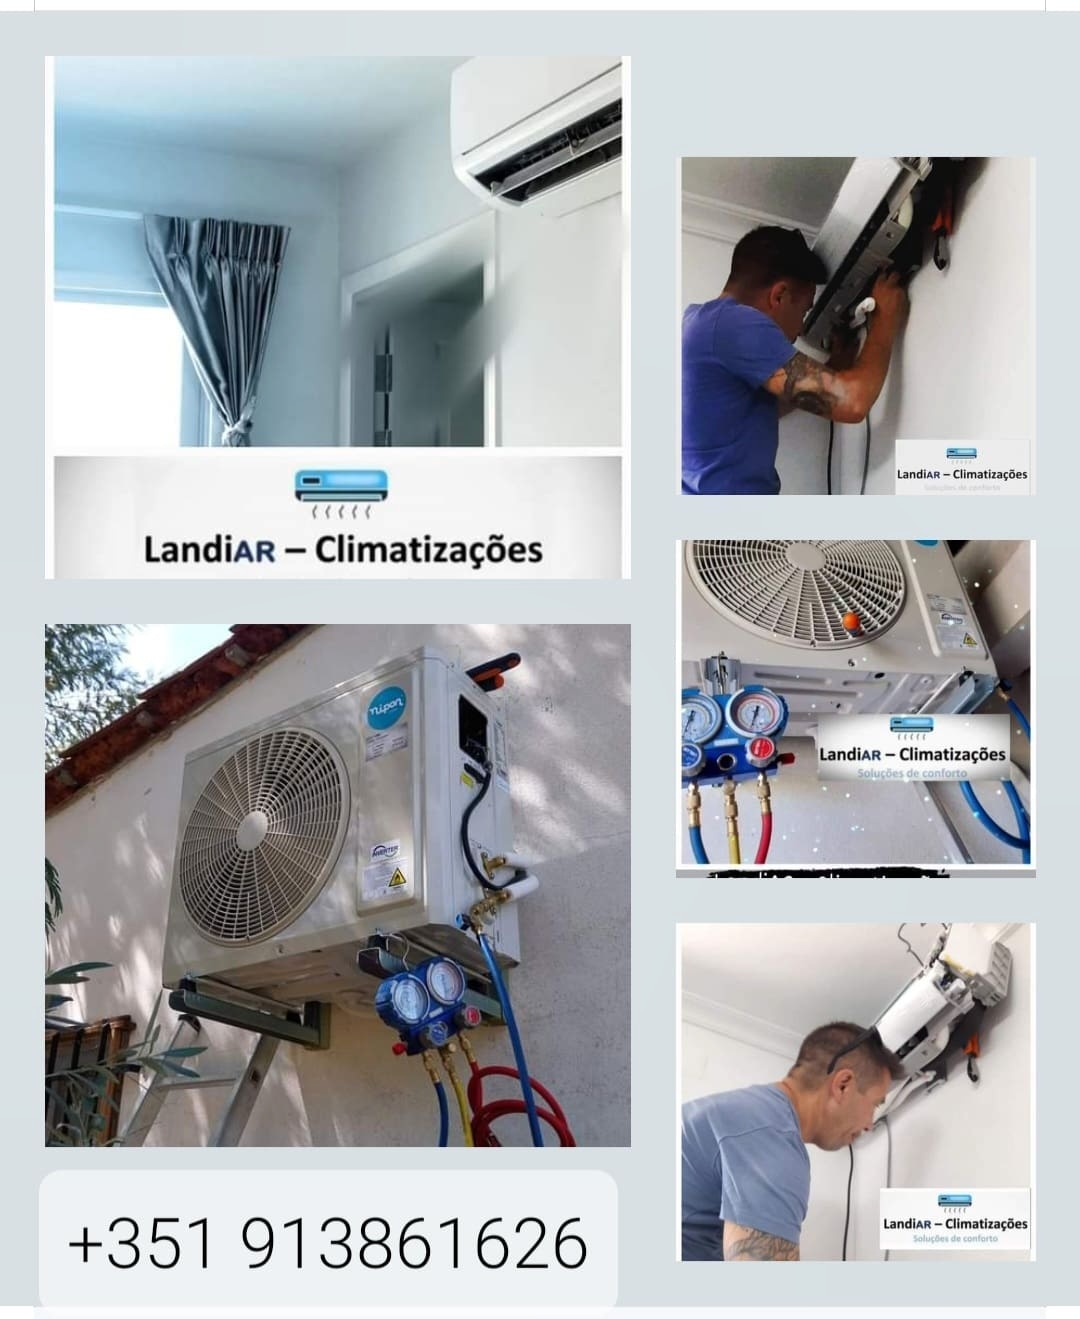 LandiAR - Climatizações - Penamacor - Instalação ou Substituição de Tubagem de Ventilação